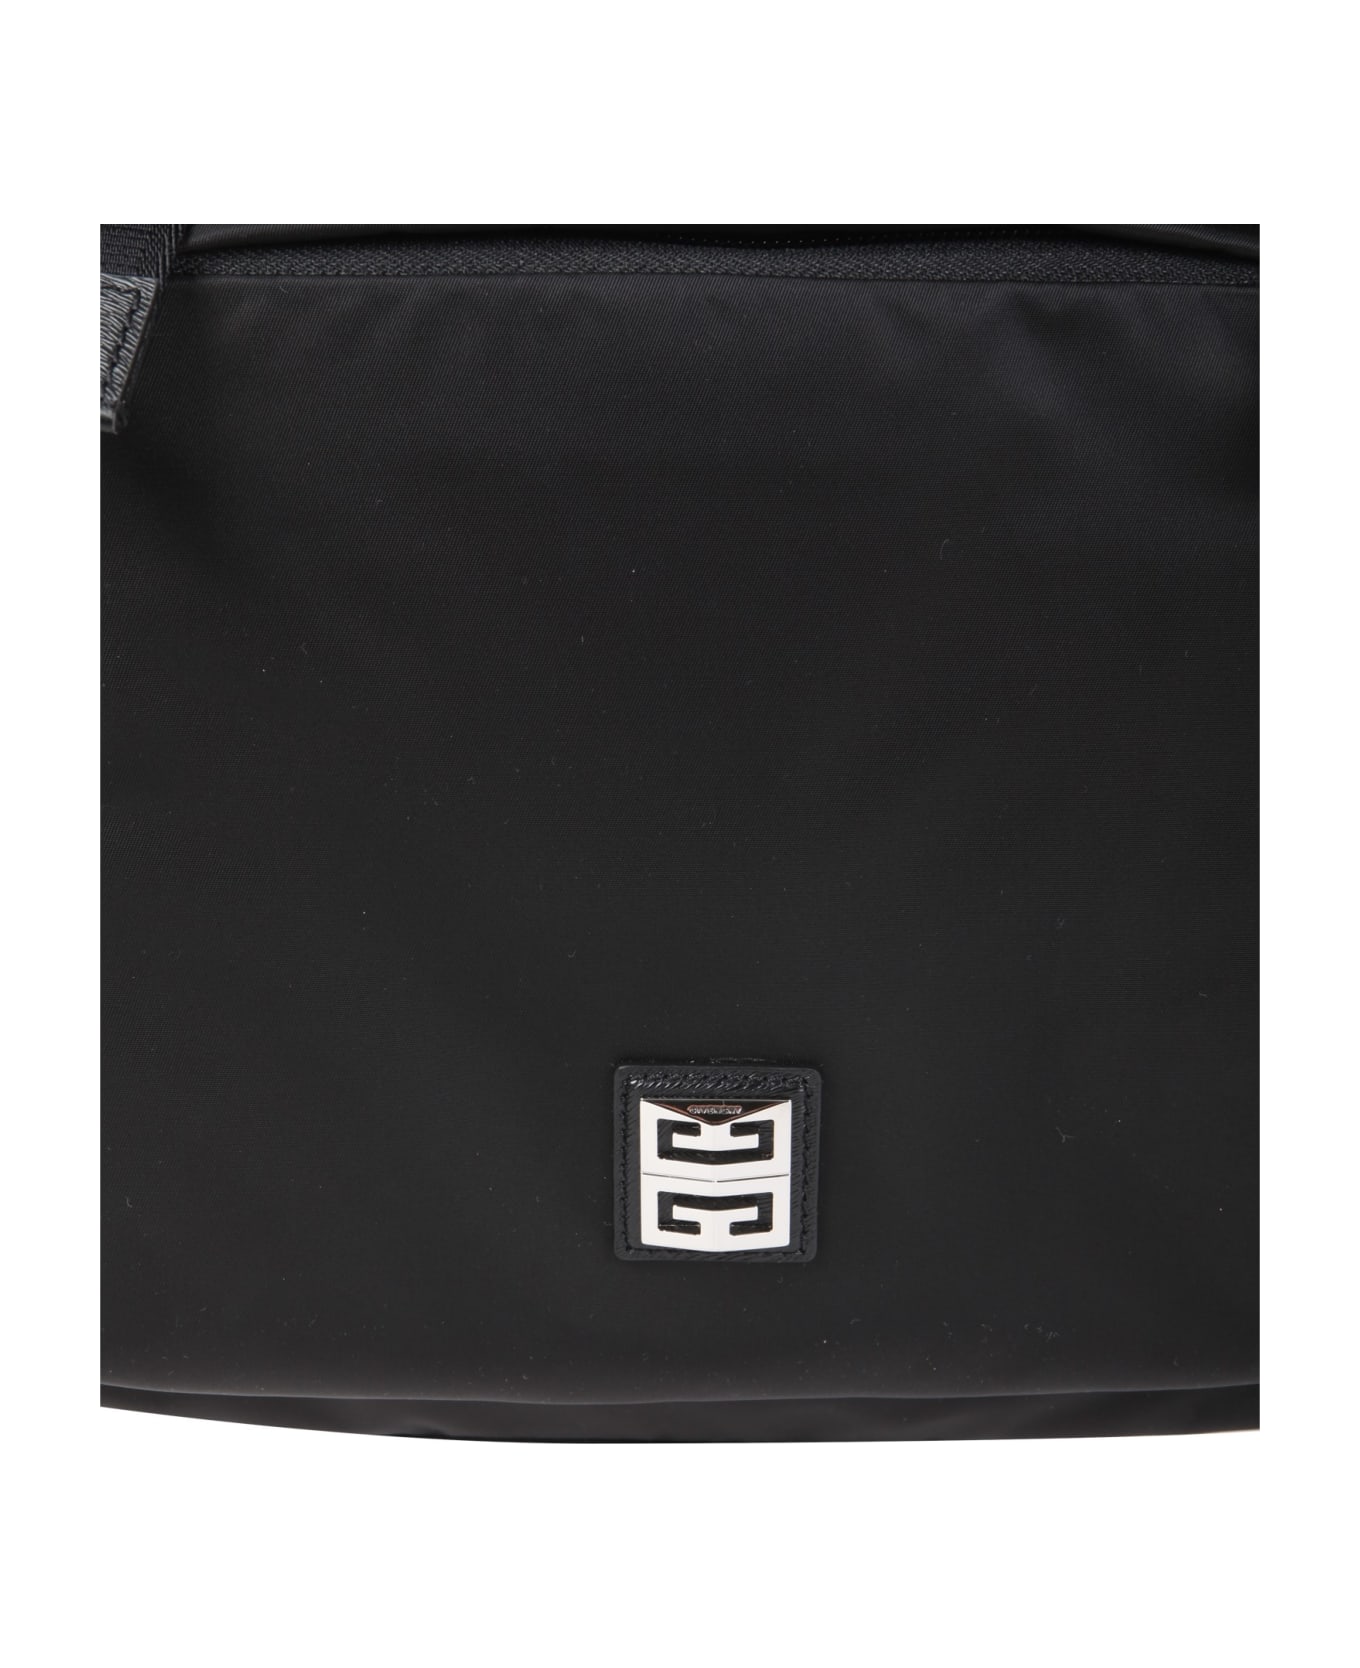 Givenchy 4g Light Backpack - Black